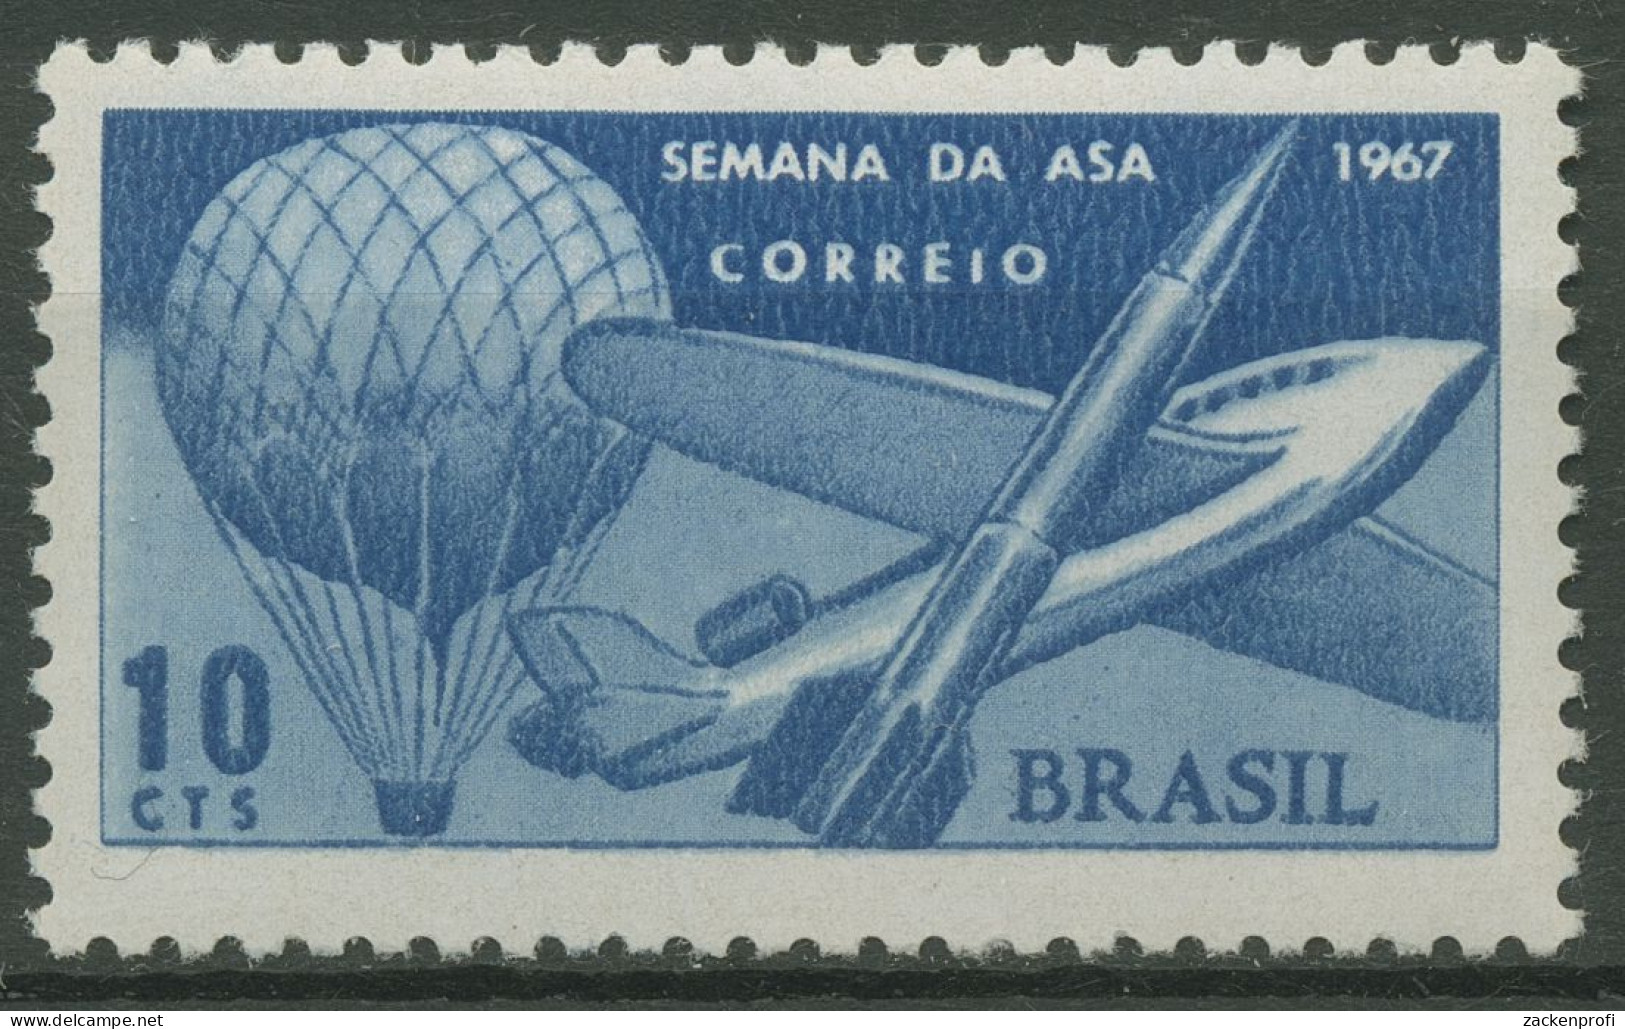 Brasilien 1967 Flugwoche Ballon Flugzeug Rakete 1151 Postfrisch - Ungebraucht